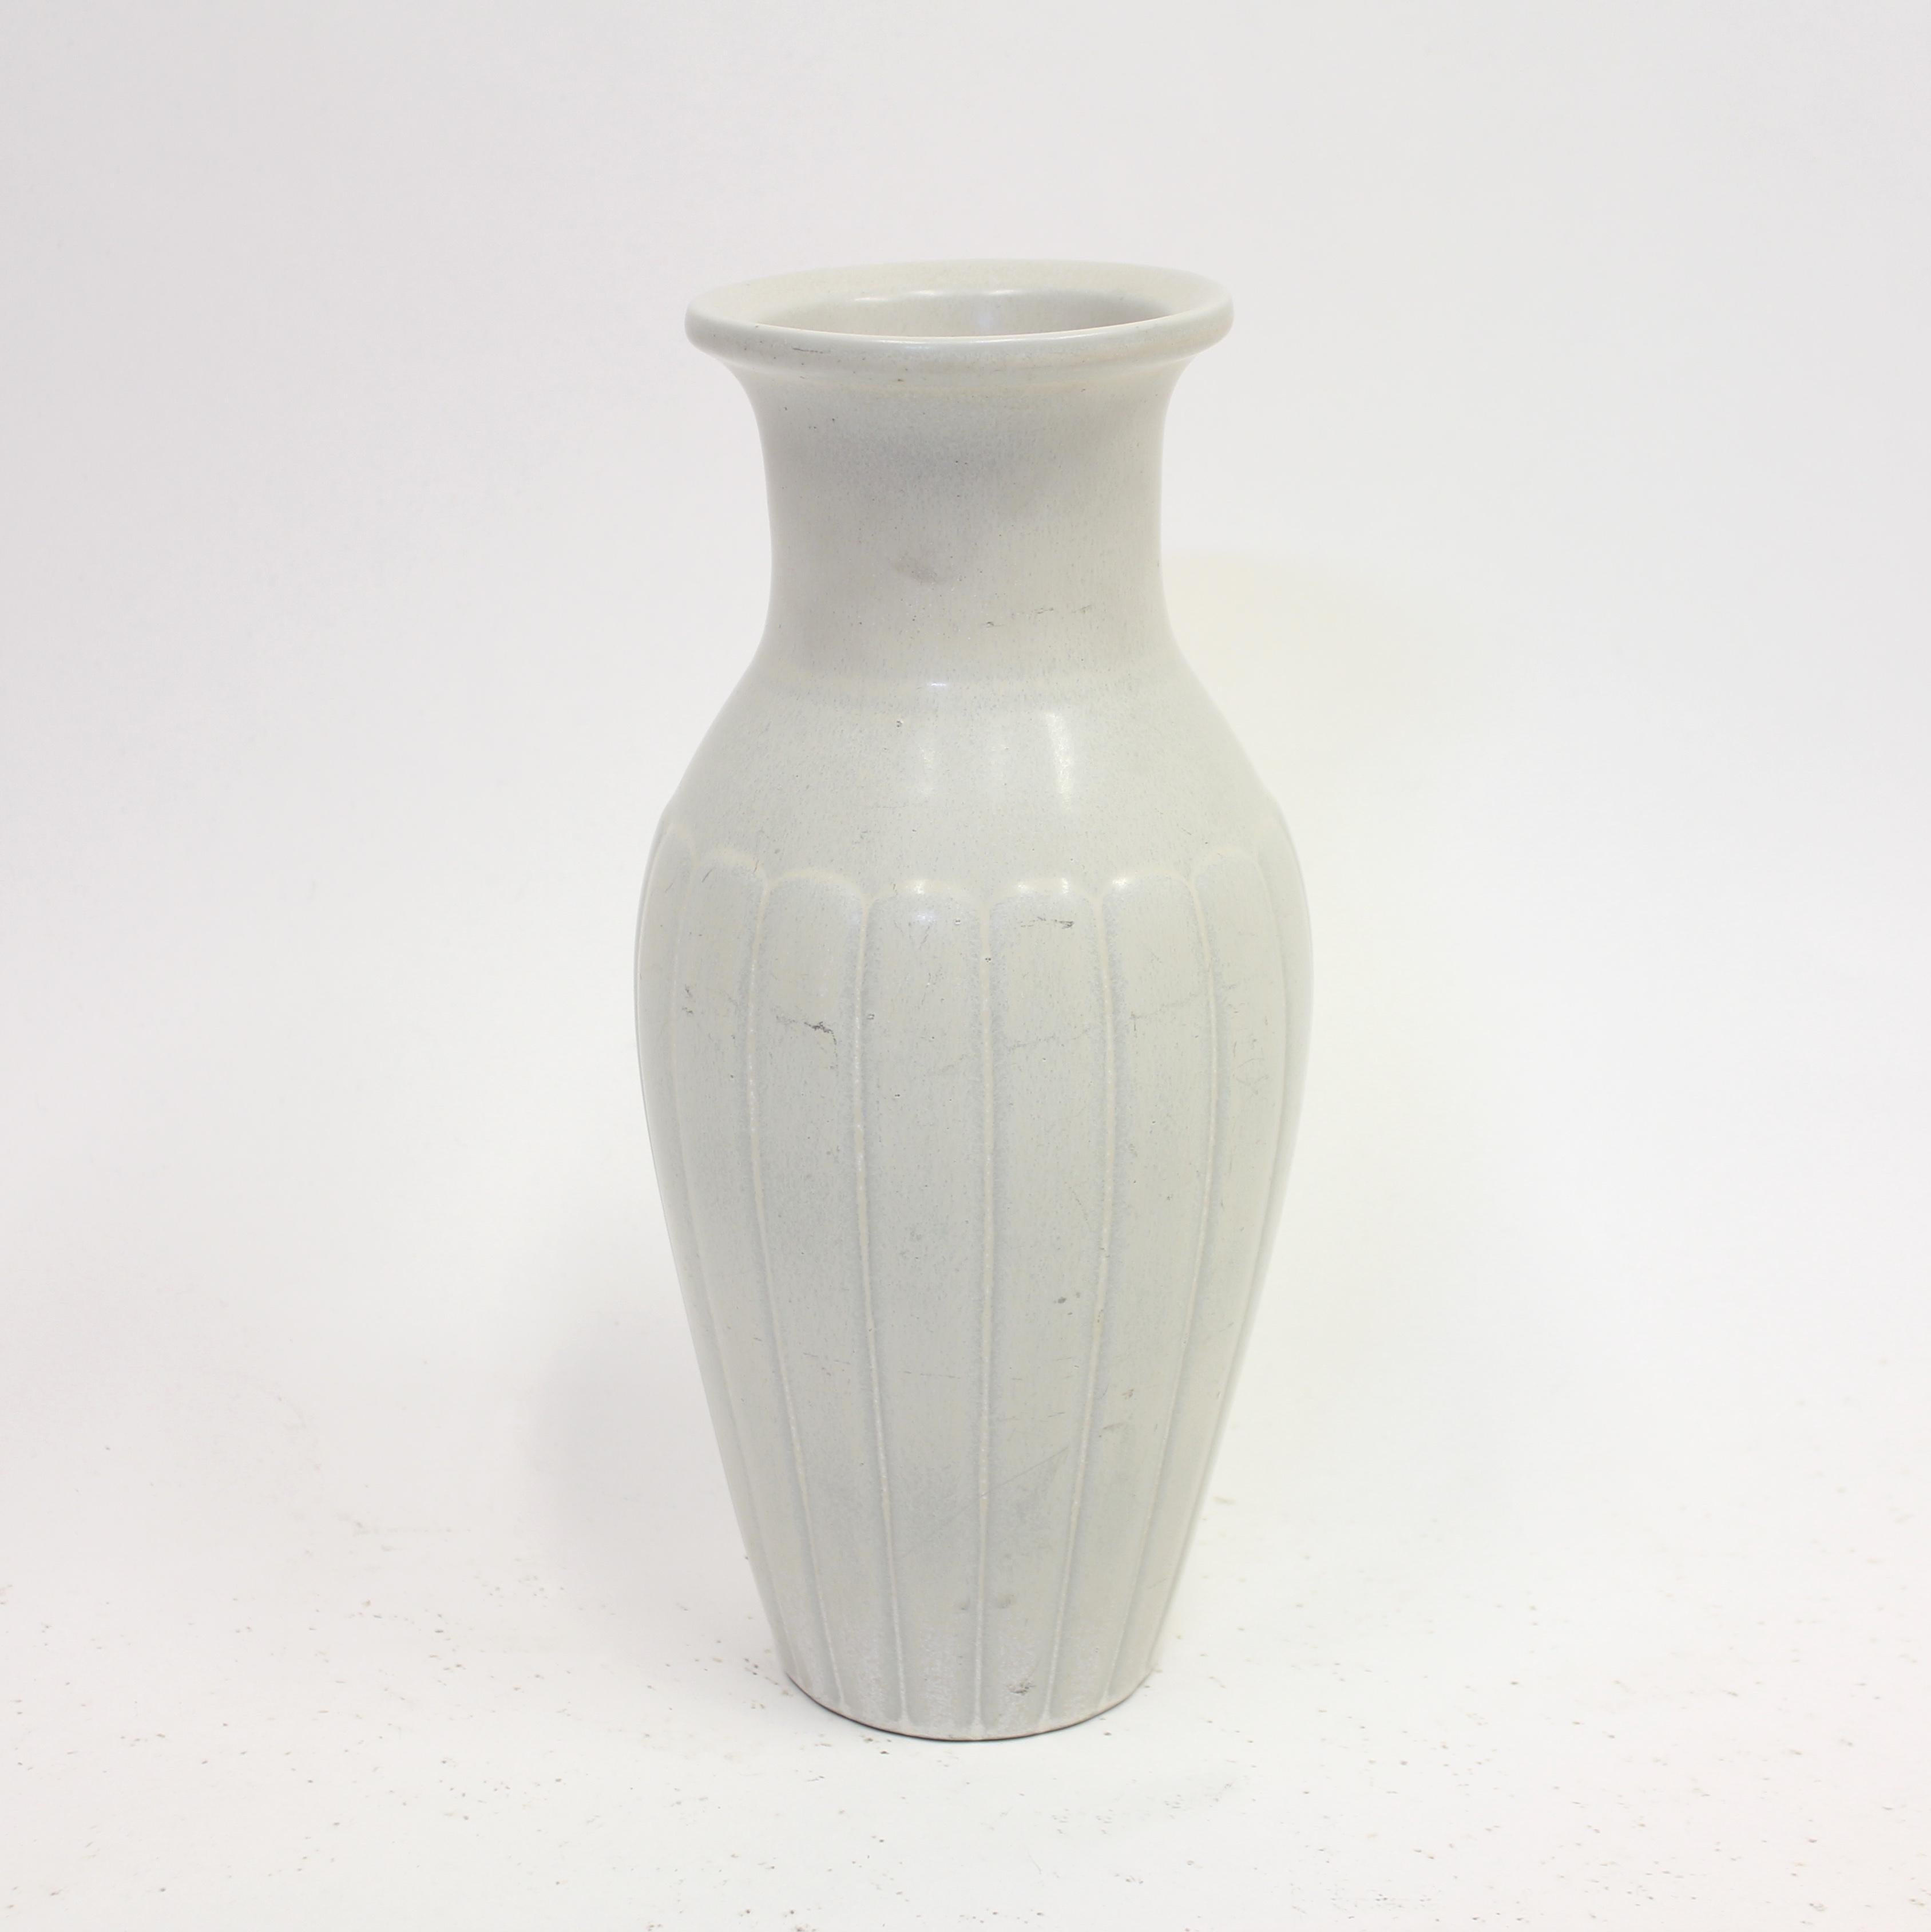 Grand vase en grès blanc du céramiste suédois Gunnar Nylund, produit par Rörstrand dans les années 1950. Belle forme avec un motif rayé sur la partie inférieure et plus large. Le vase est en bon état général, avec des traces normales d'usure dues à